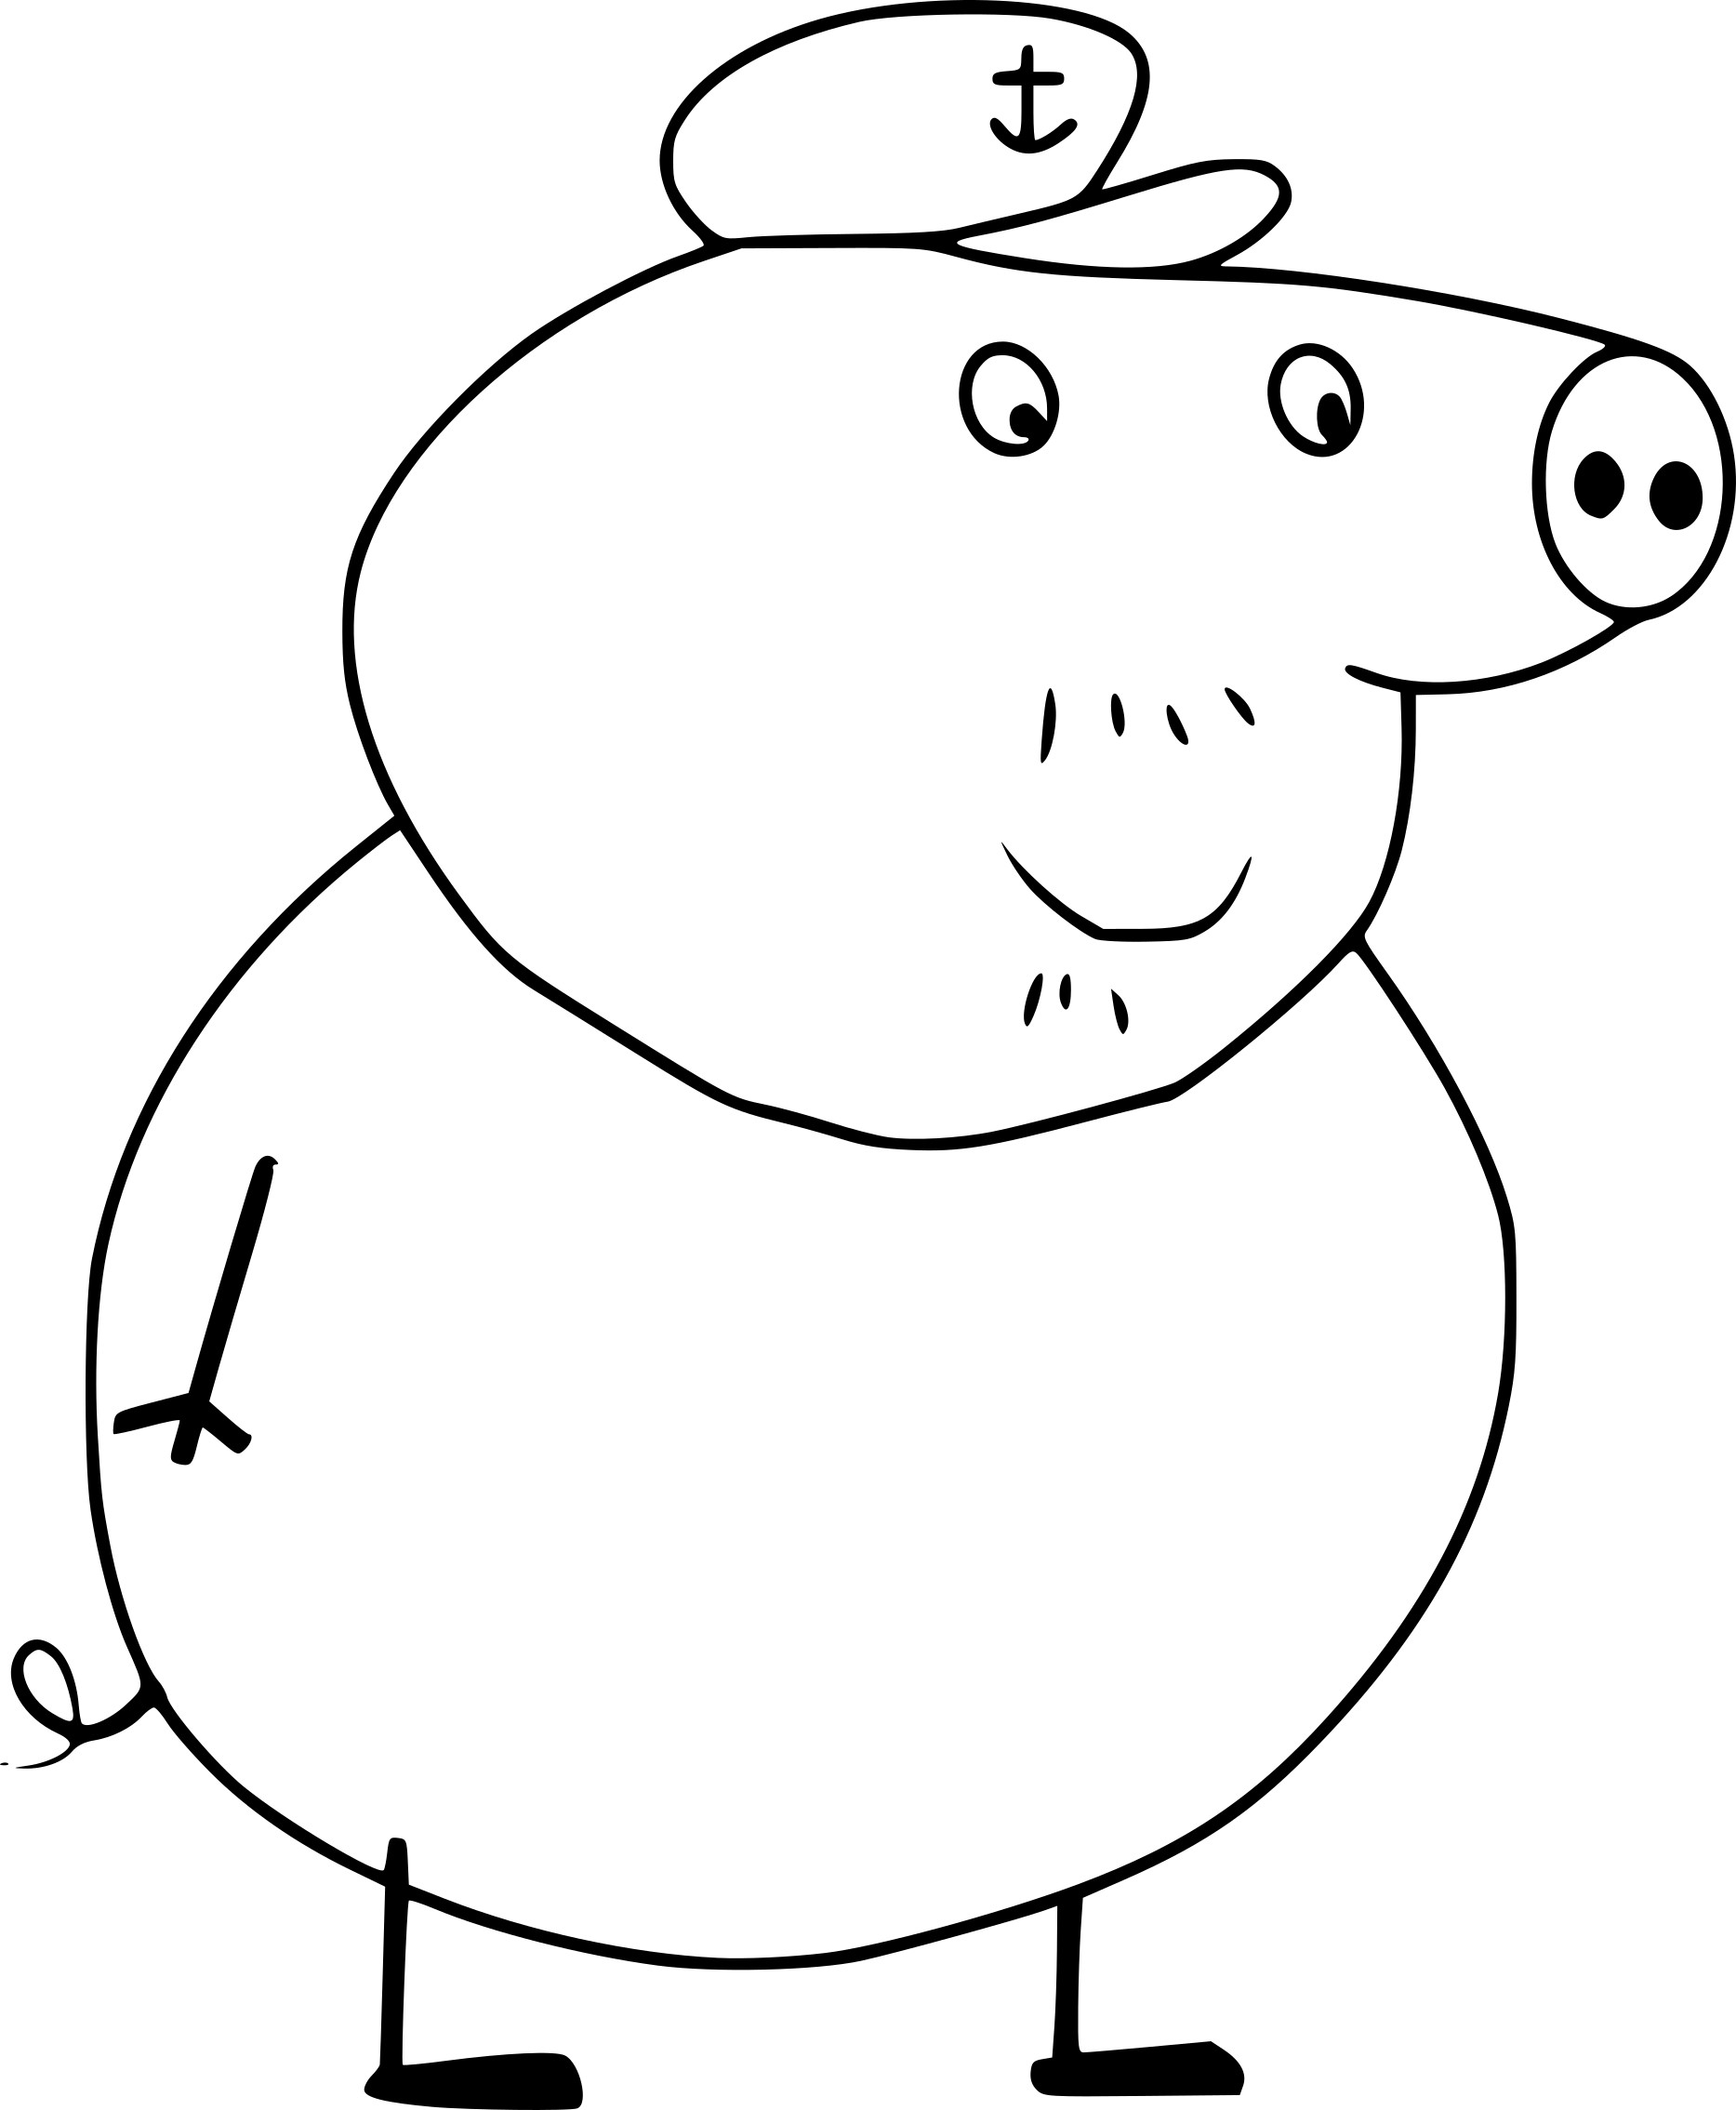 Disegno di Nonno Pig in Peppa Pig da colorare